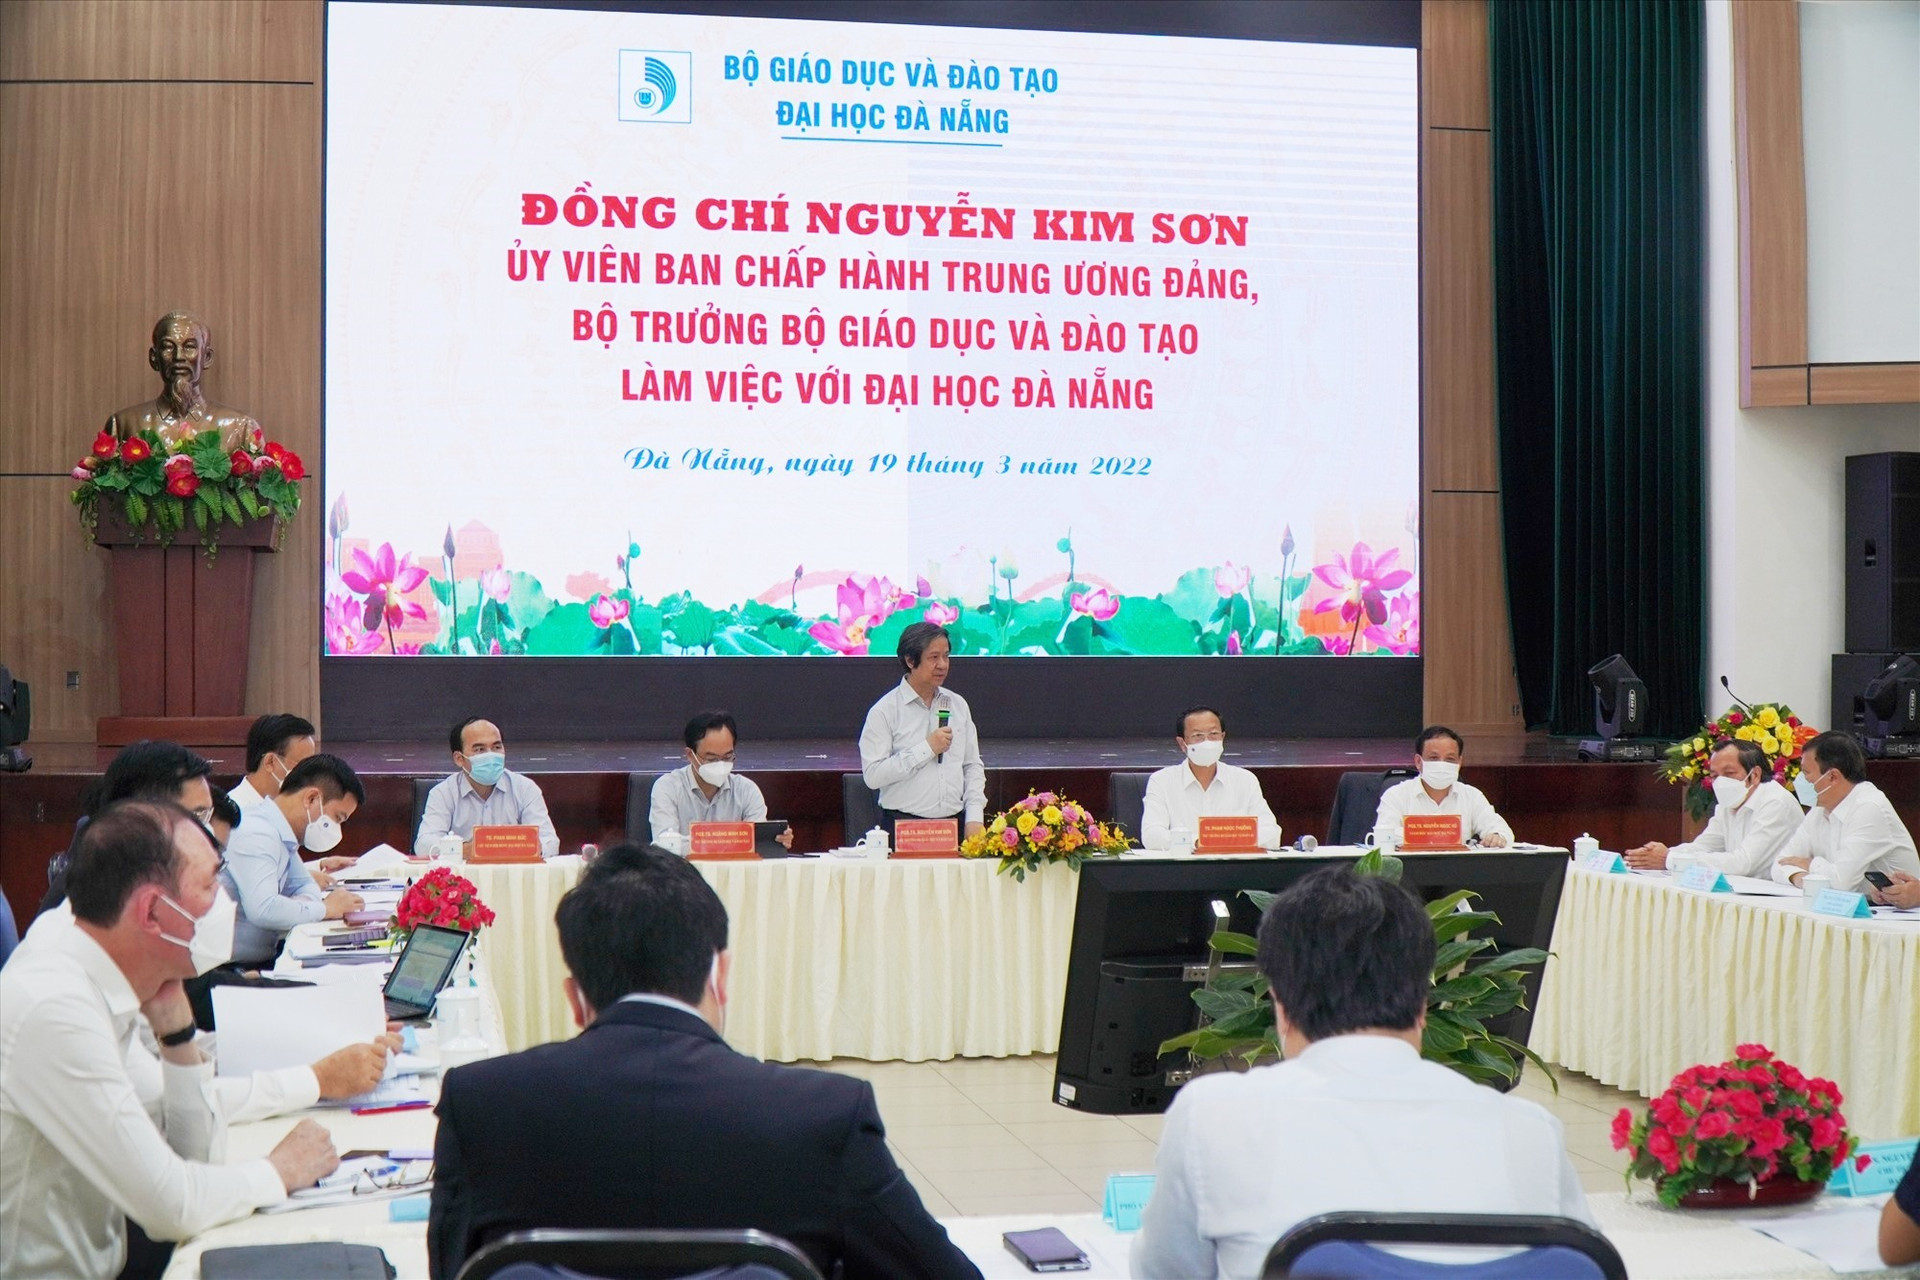 Bộ trưởng Nguyễn Kim Sơn làm việc với lãnh đạo ĐHĐN sáng 19.3. Ảnh NTB